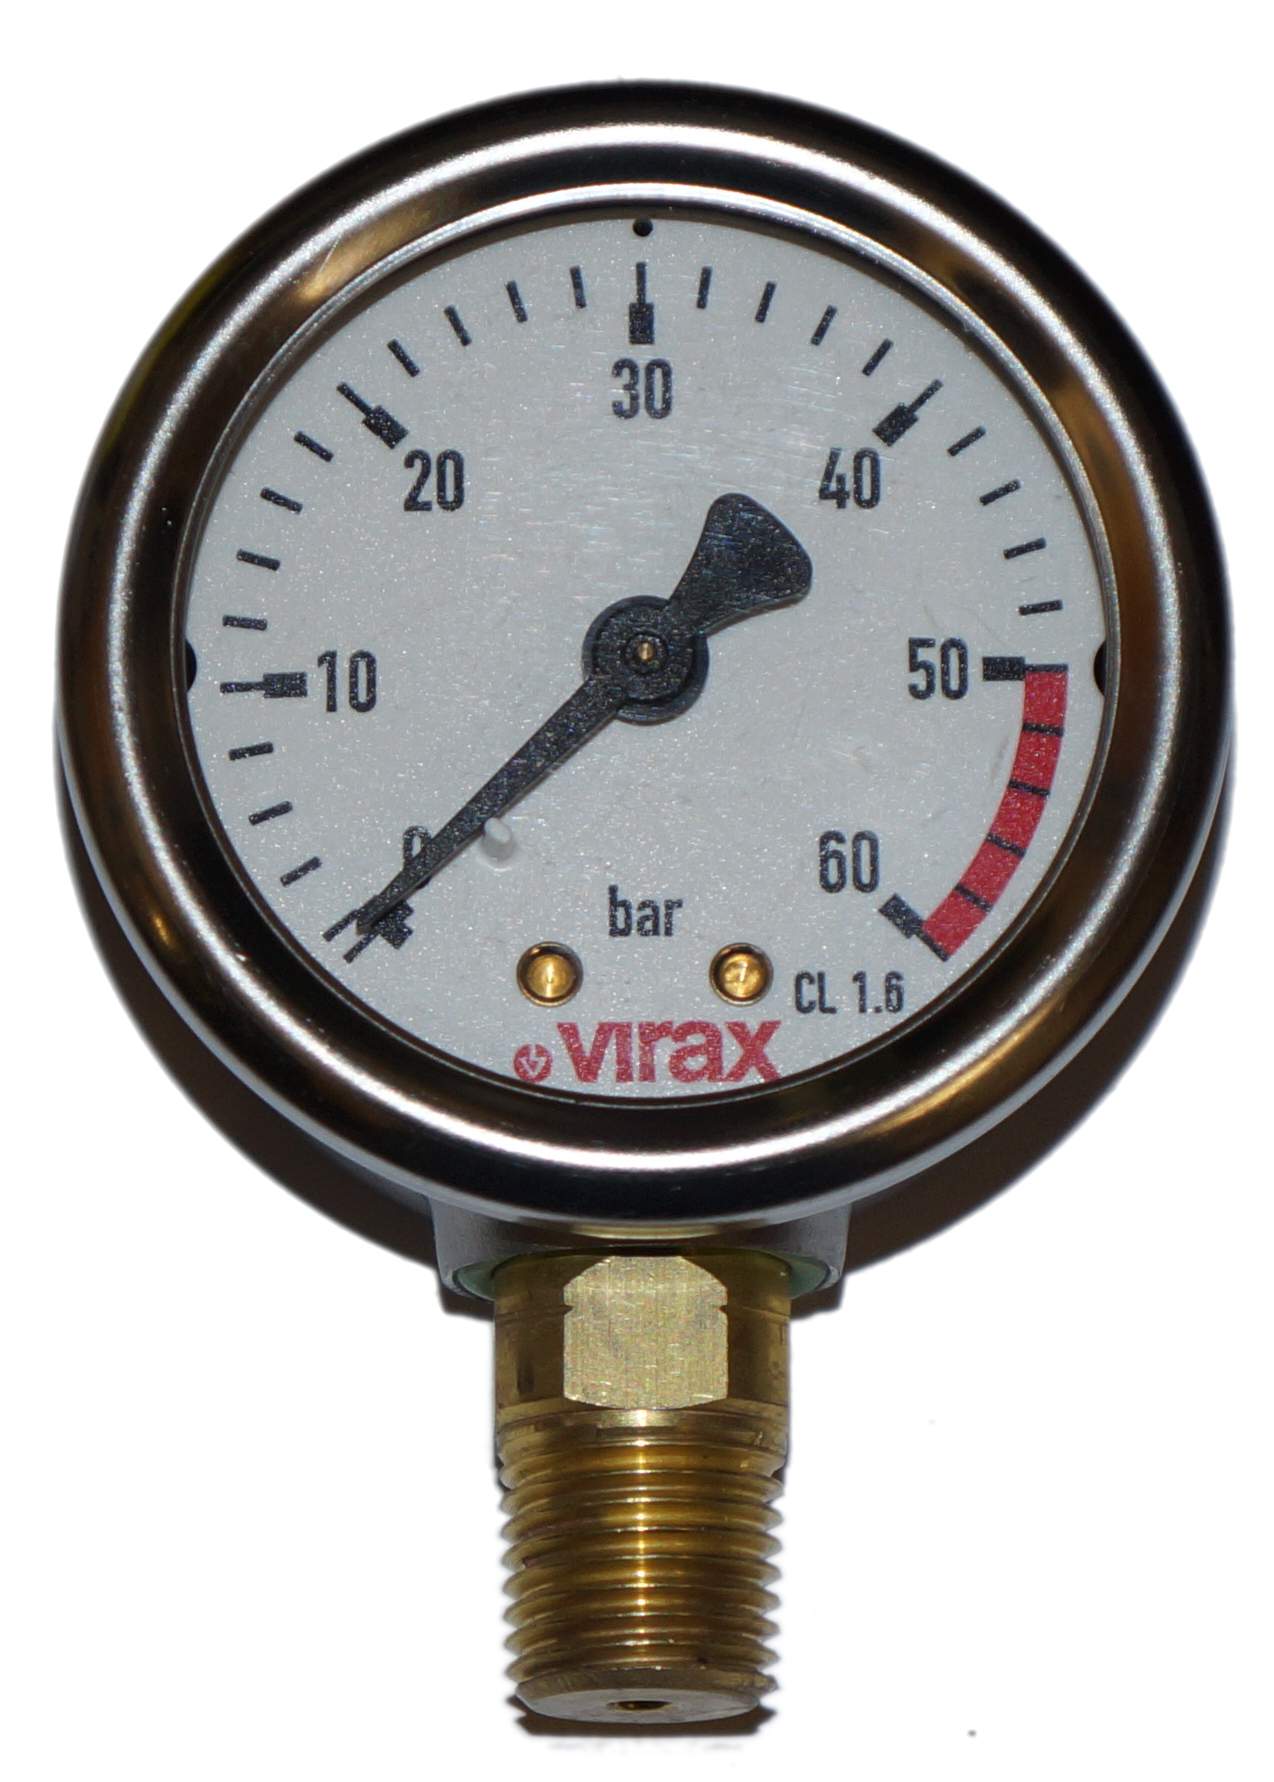 Test pump pressure gauge